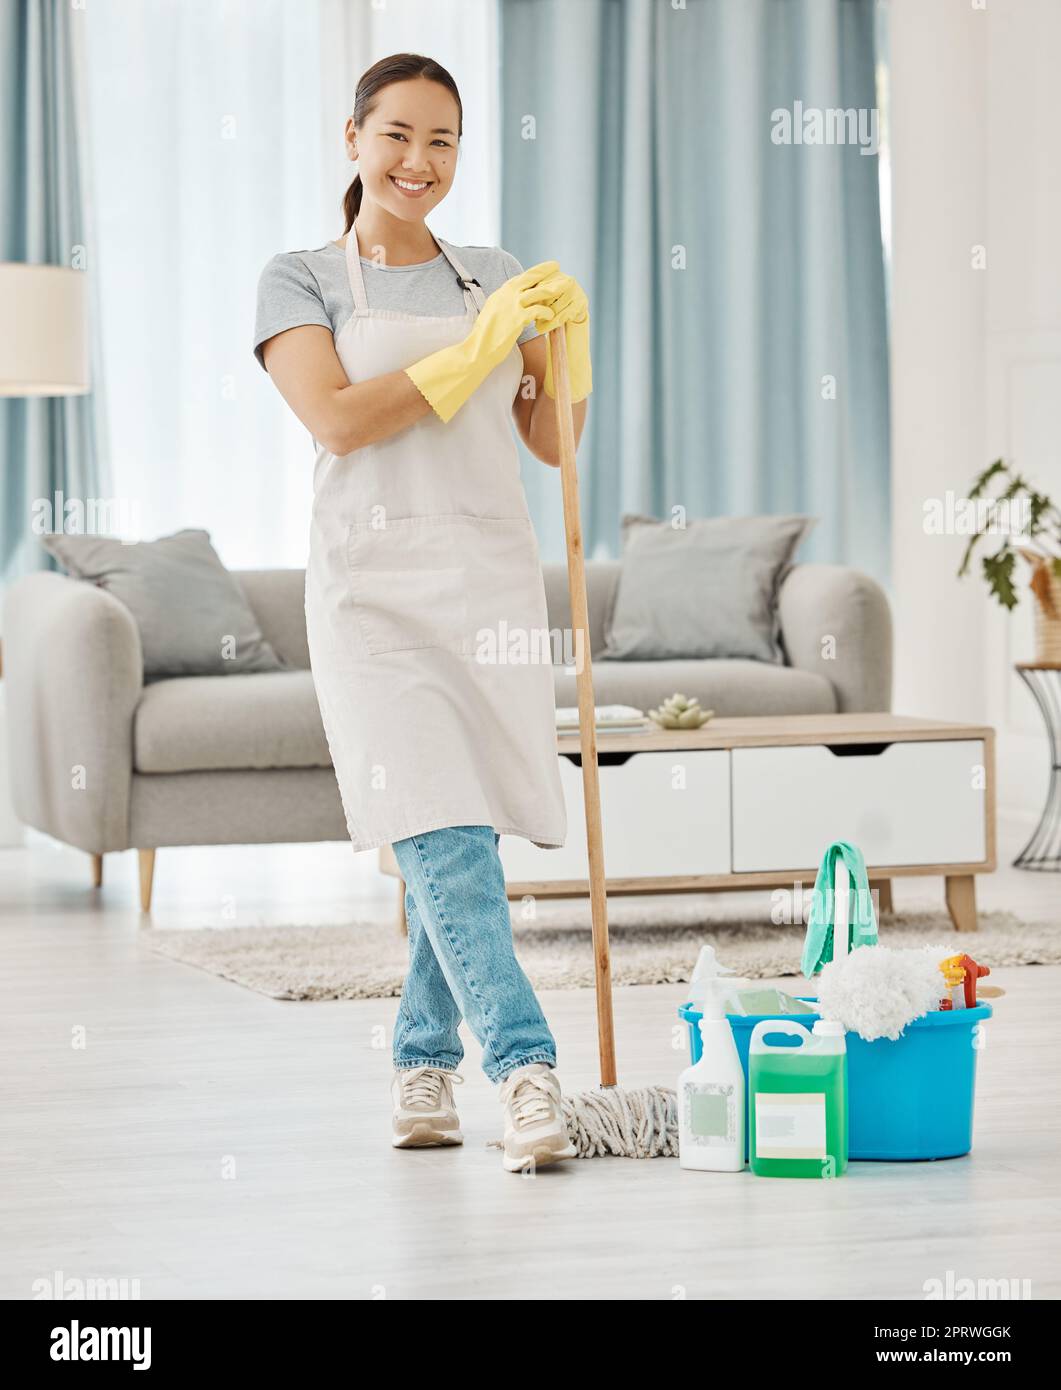 Fußbodenreinigung, Hausarbeit und Frau, die im Home Service arbeitet, wischte das Wohnzimmer, machte ihre Arbeit mit einem Lächeln und machte gerne die Wohnung sauber. Porträt von asiatischem Reinigungspersonal oder Hausfrauenmädchen Stockfoto